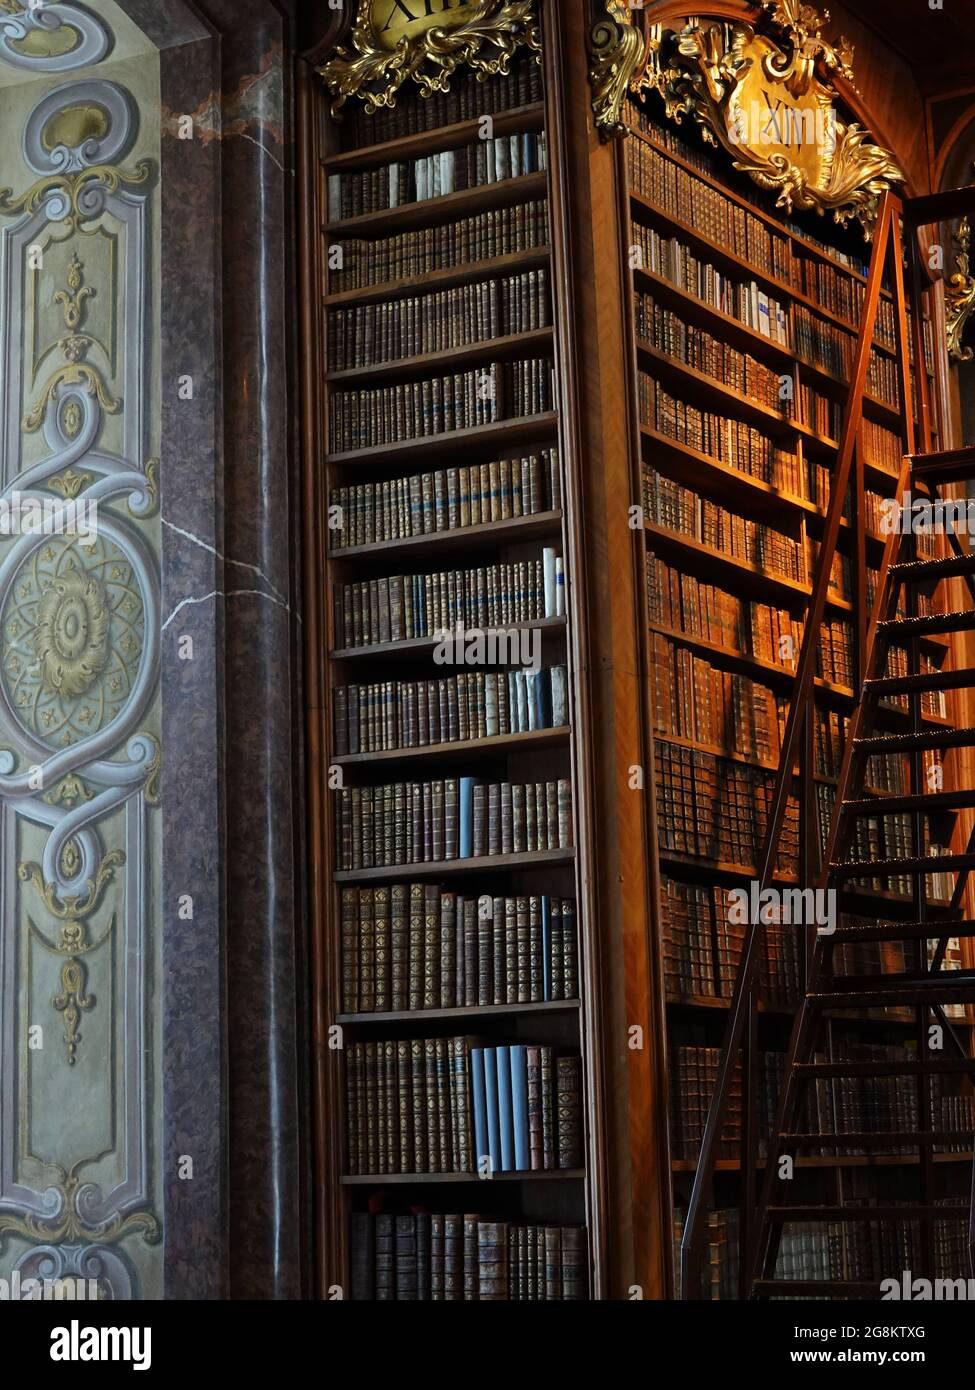 Wien, barocke Architektur und Bücher im Museum, in der Hofburg im Prunksaal der österreichischen National Bibliothek in Österreich Foto Stock